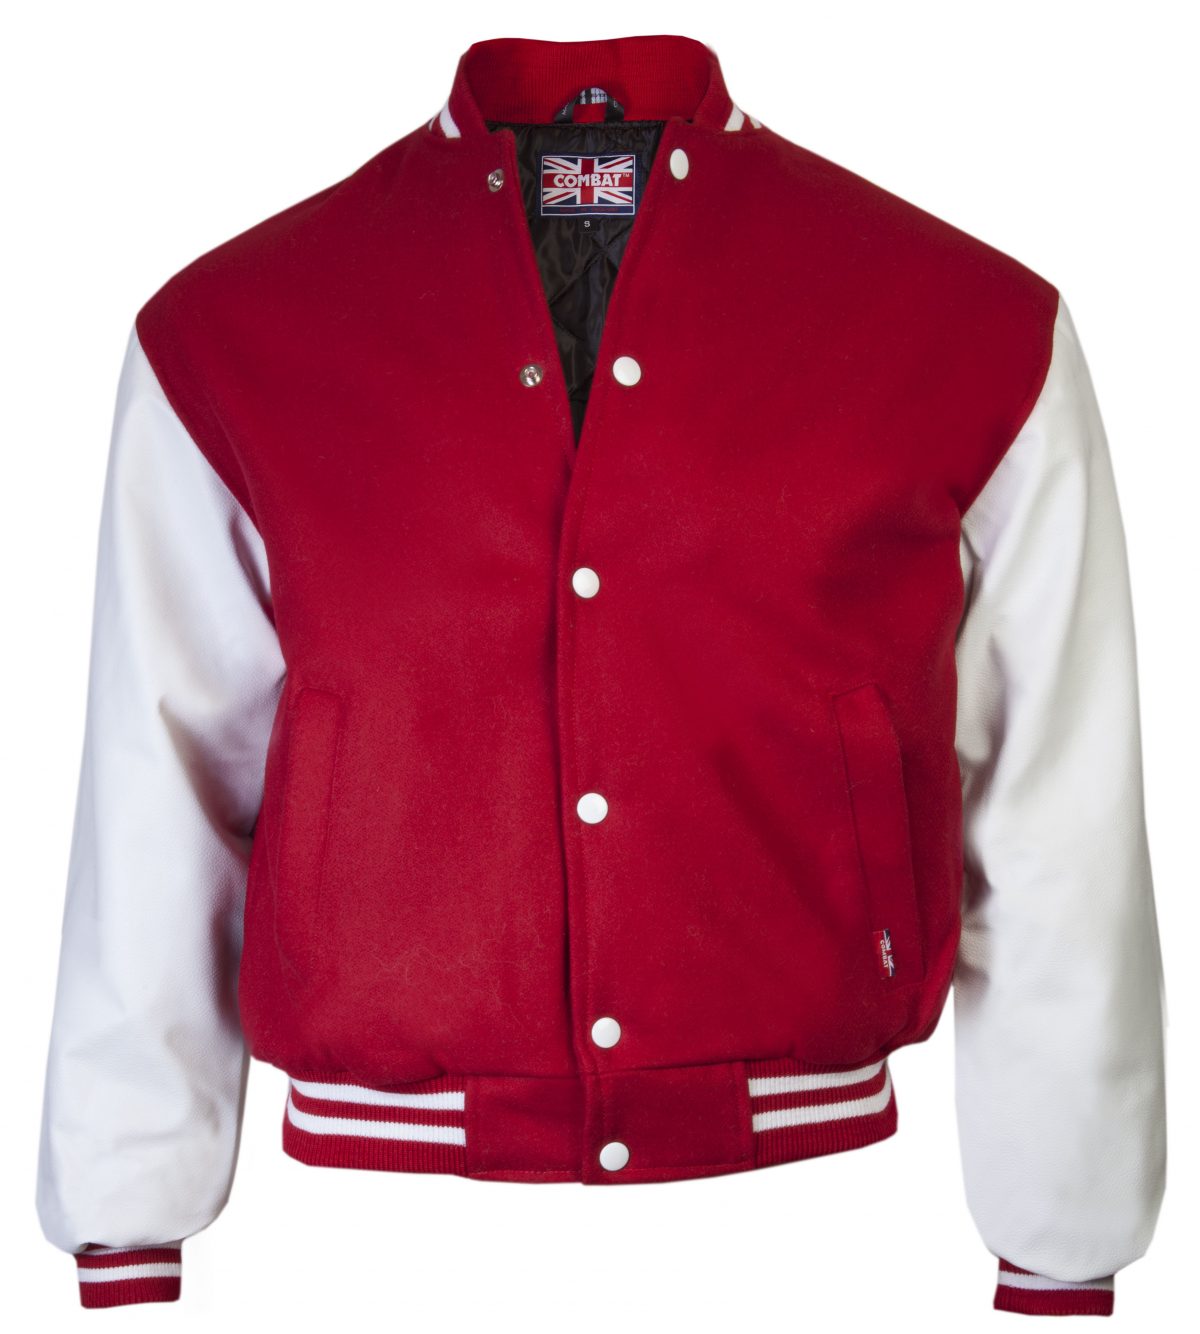 Baseball Jackets’ Outfits – careyfashion.com